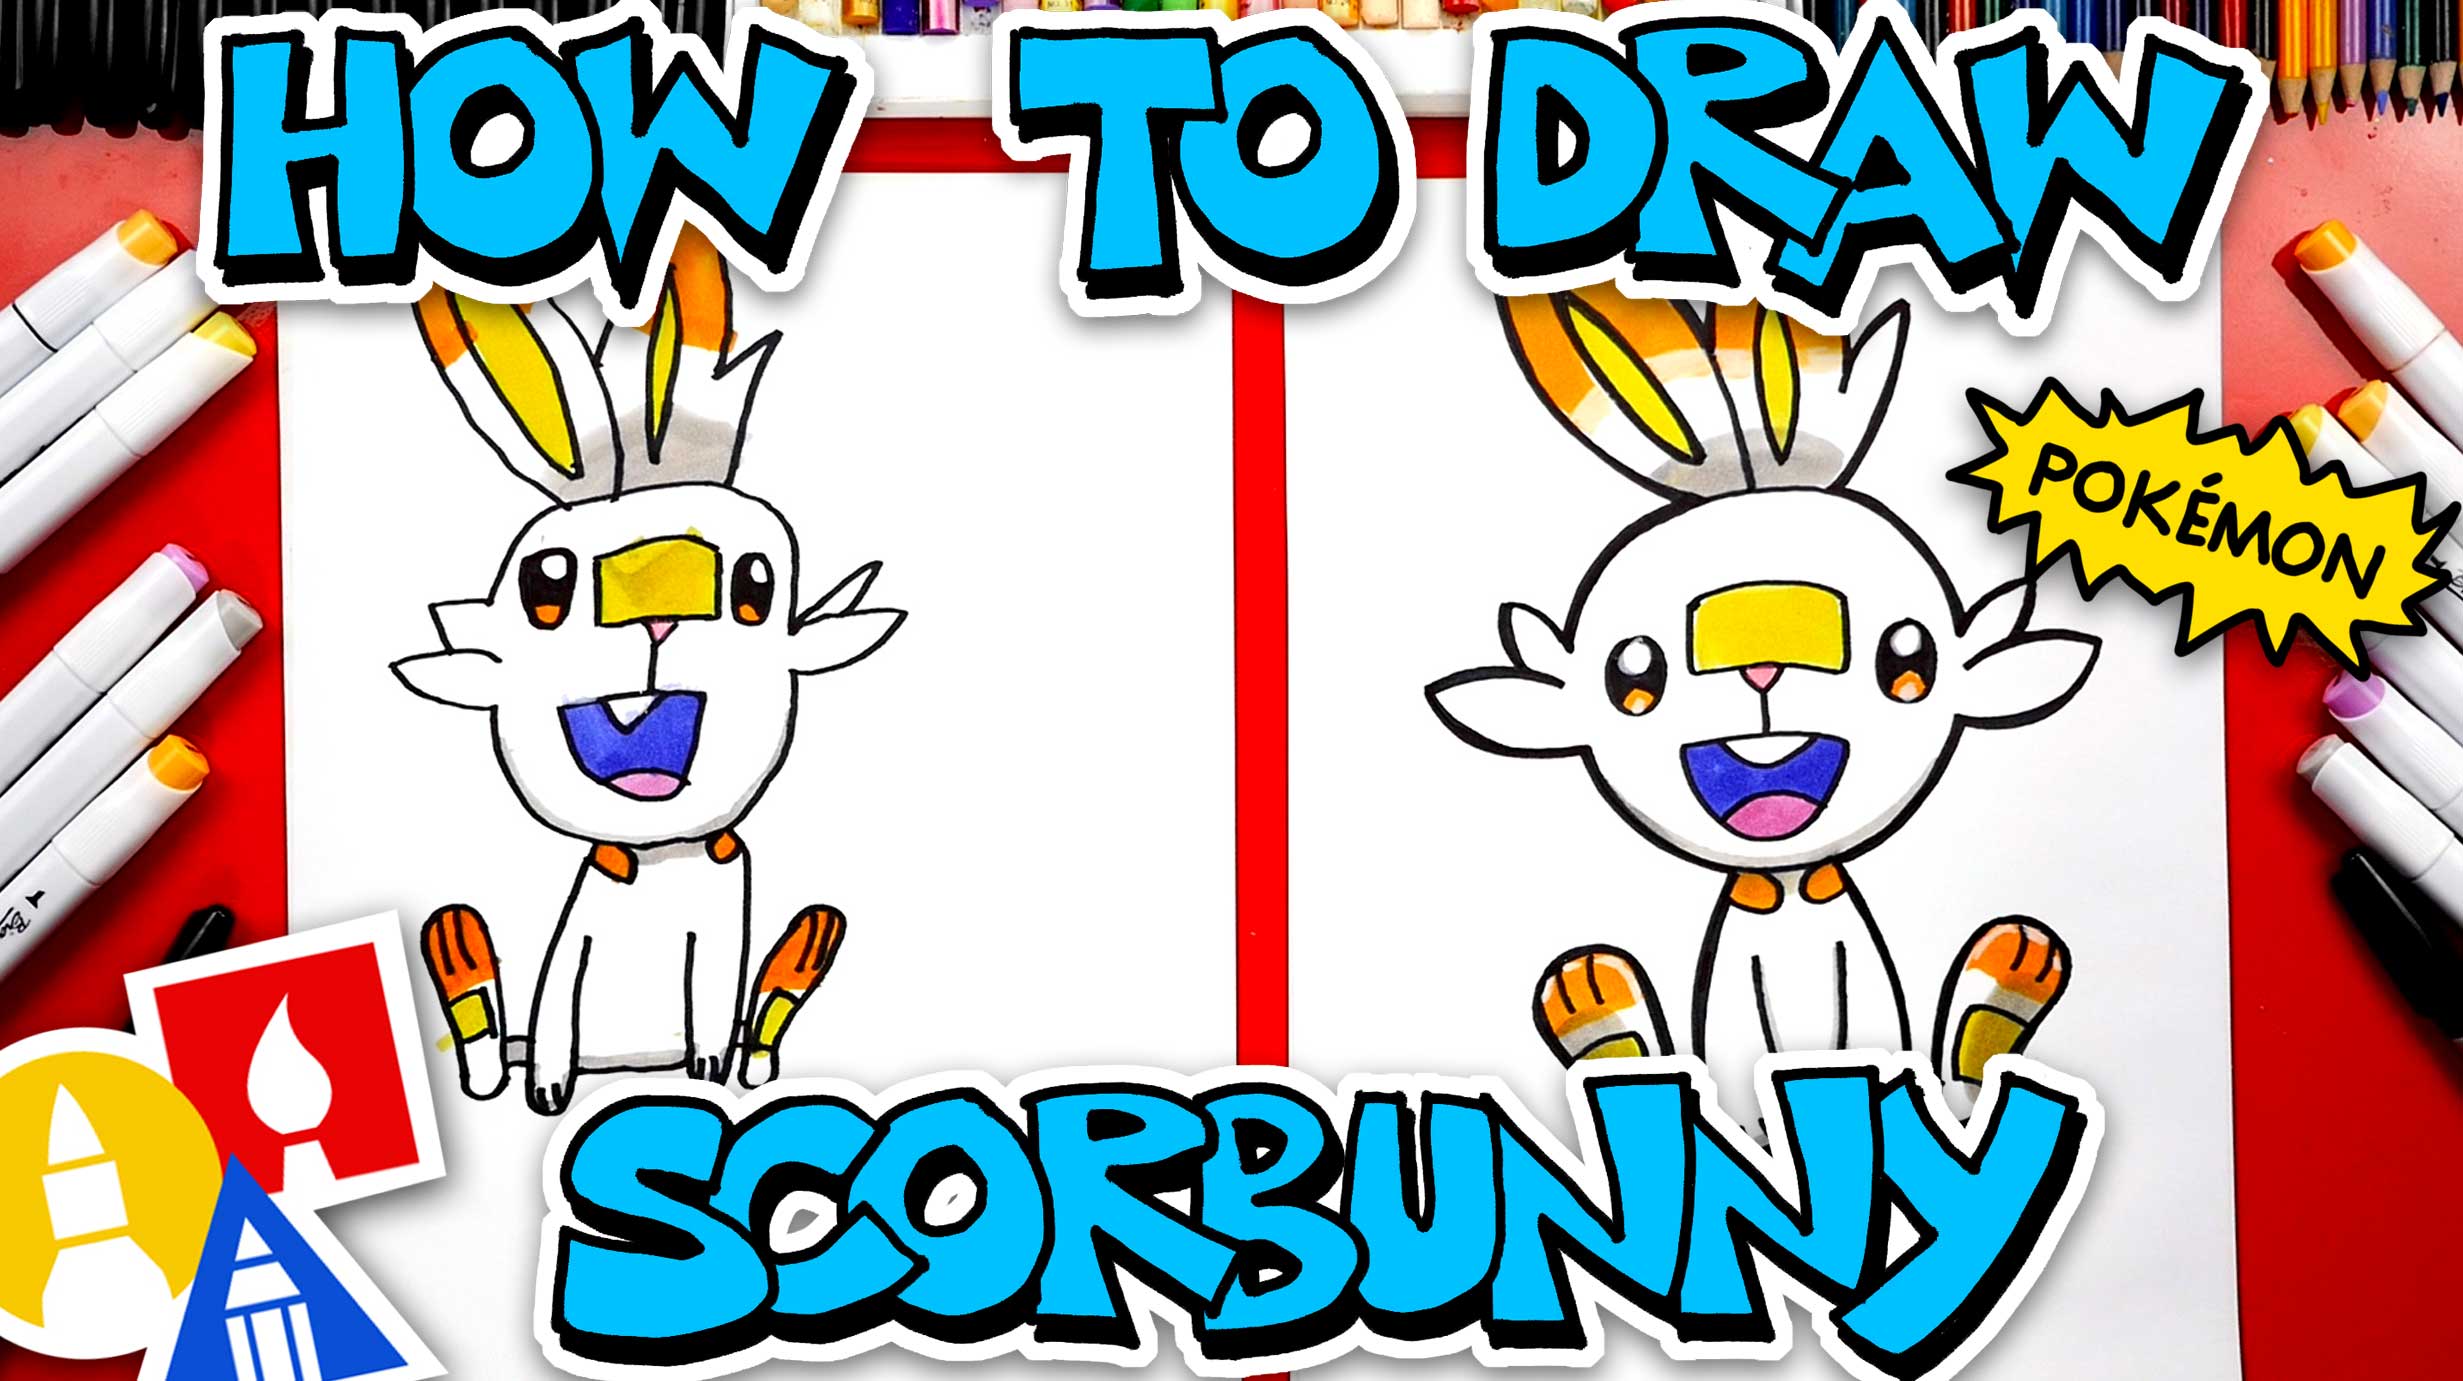 How To Draw Scorbunny Pokémon From Sword And Shield